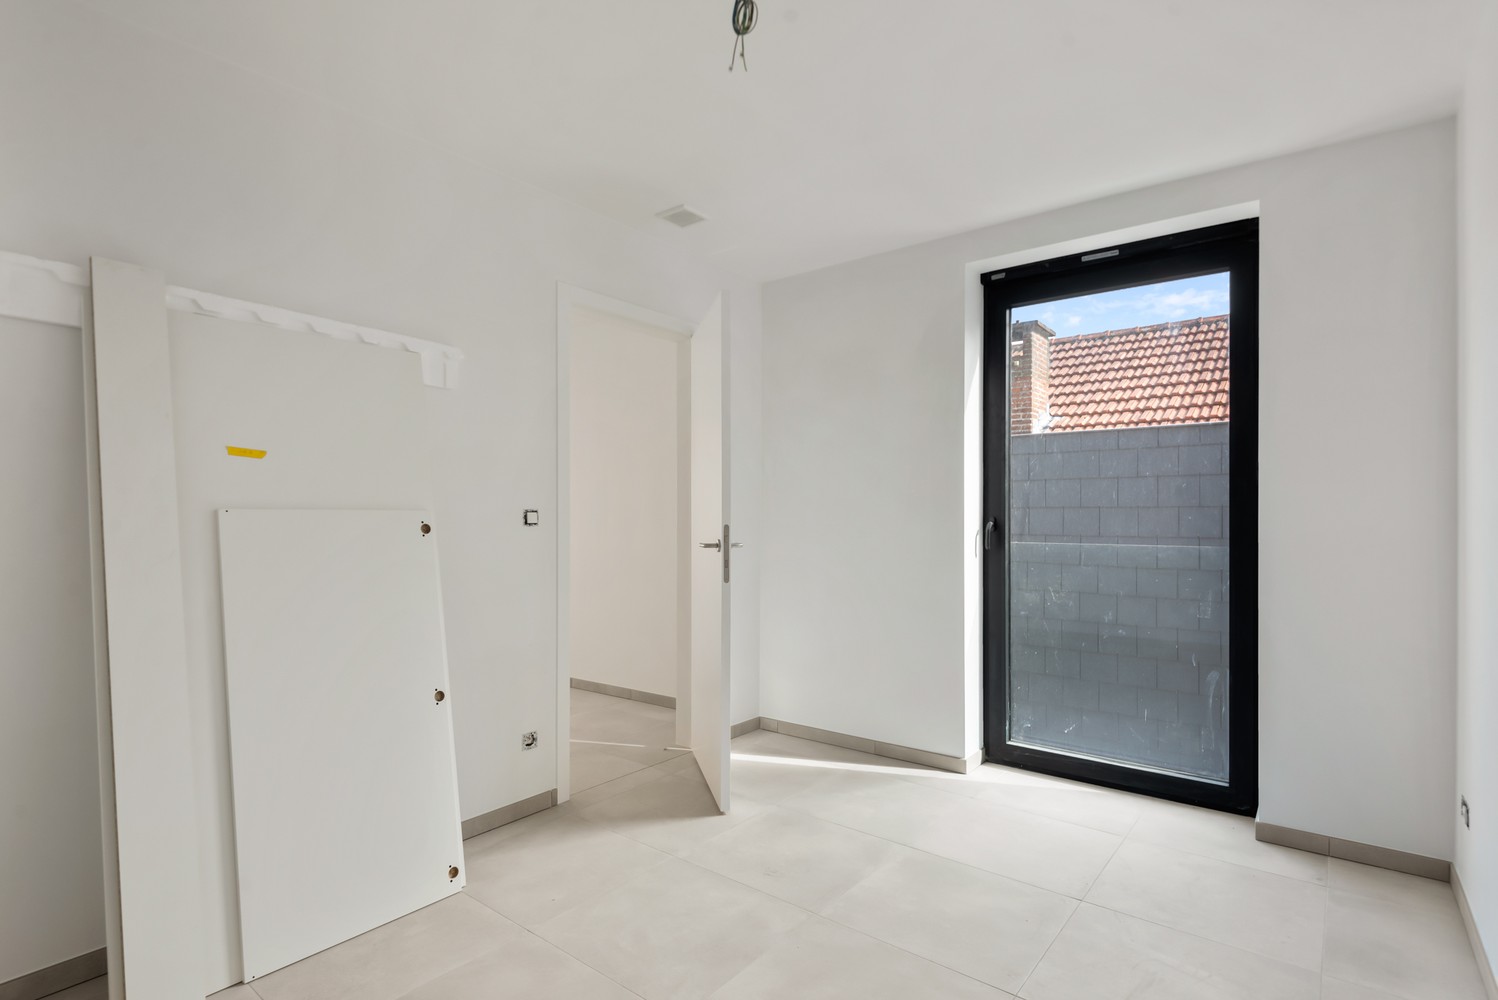 Licht en functioneel appartement (+/-77,60m²) met 1 slaapkamer en een terras (+/-7,1m²)! afbeelding 6